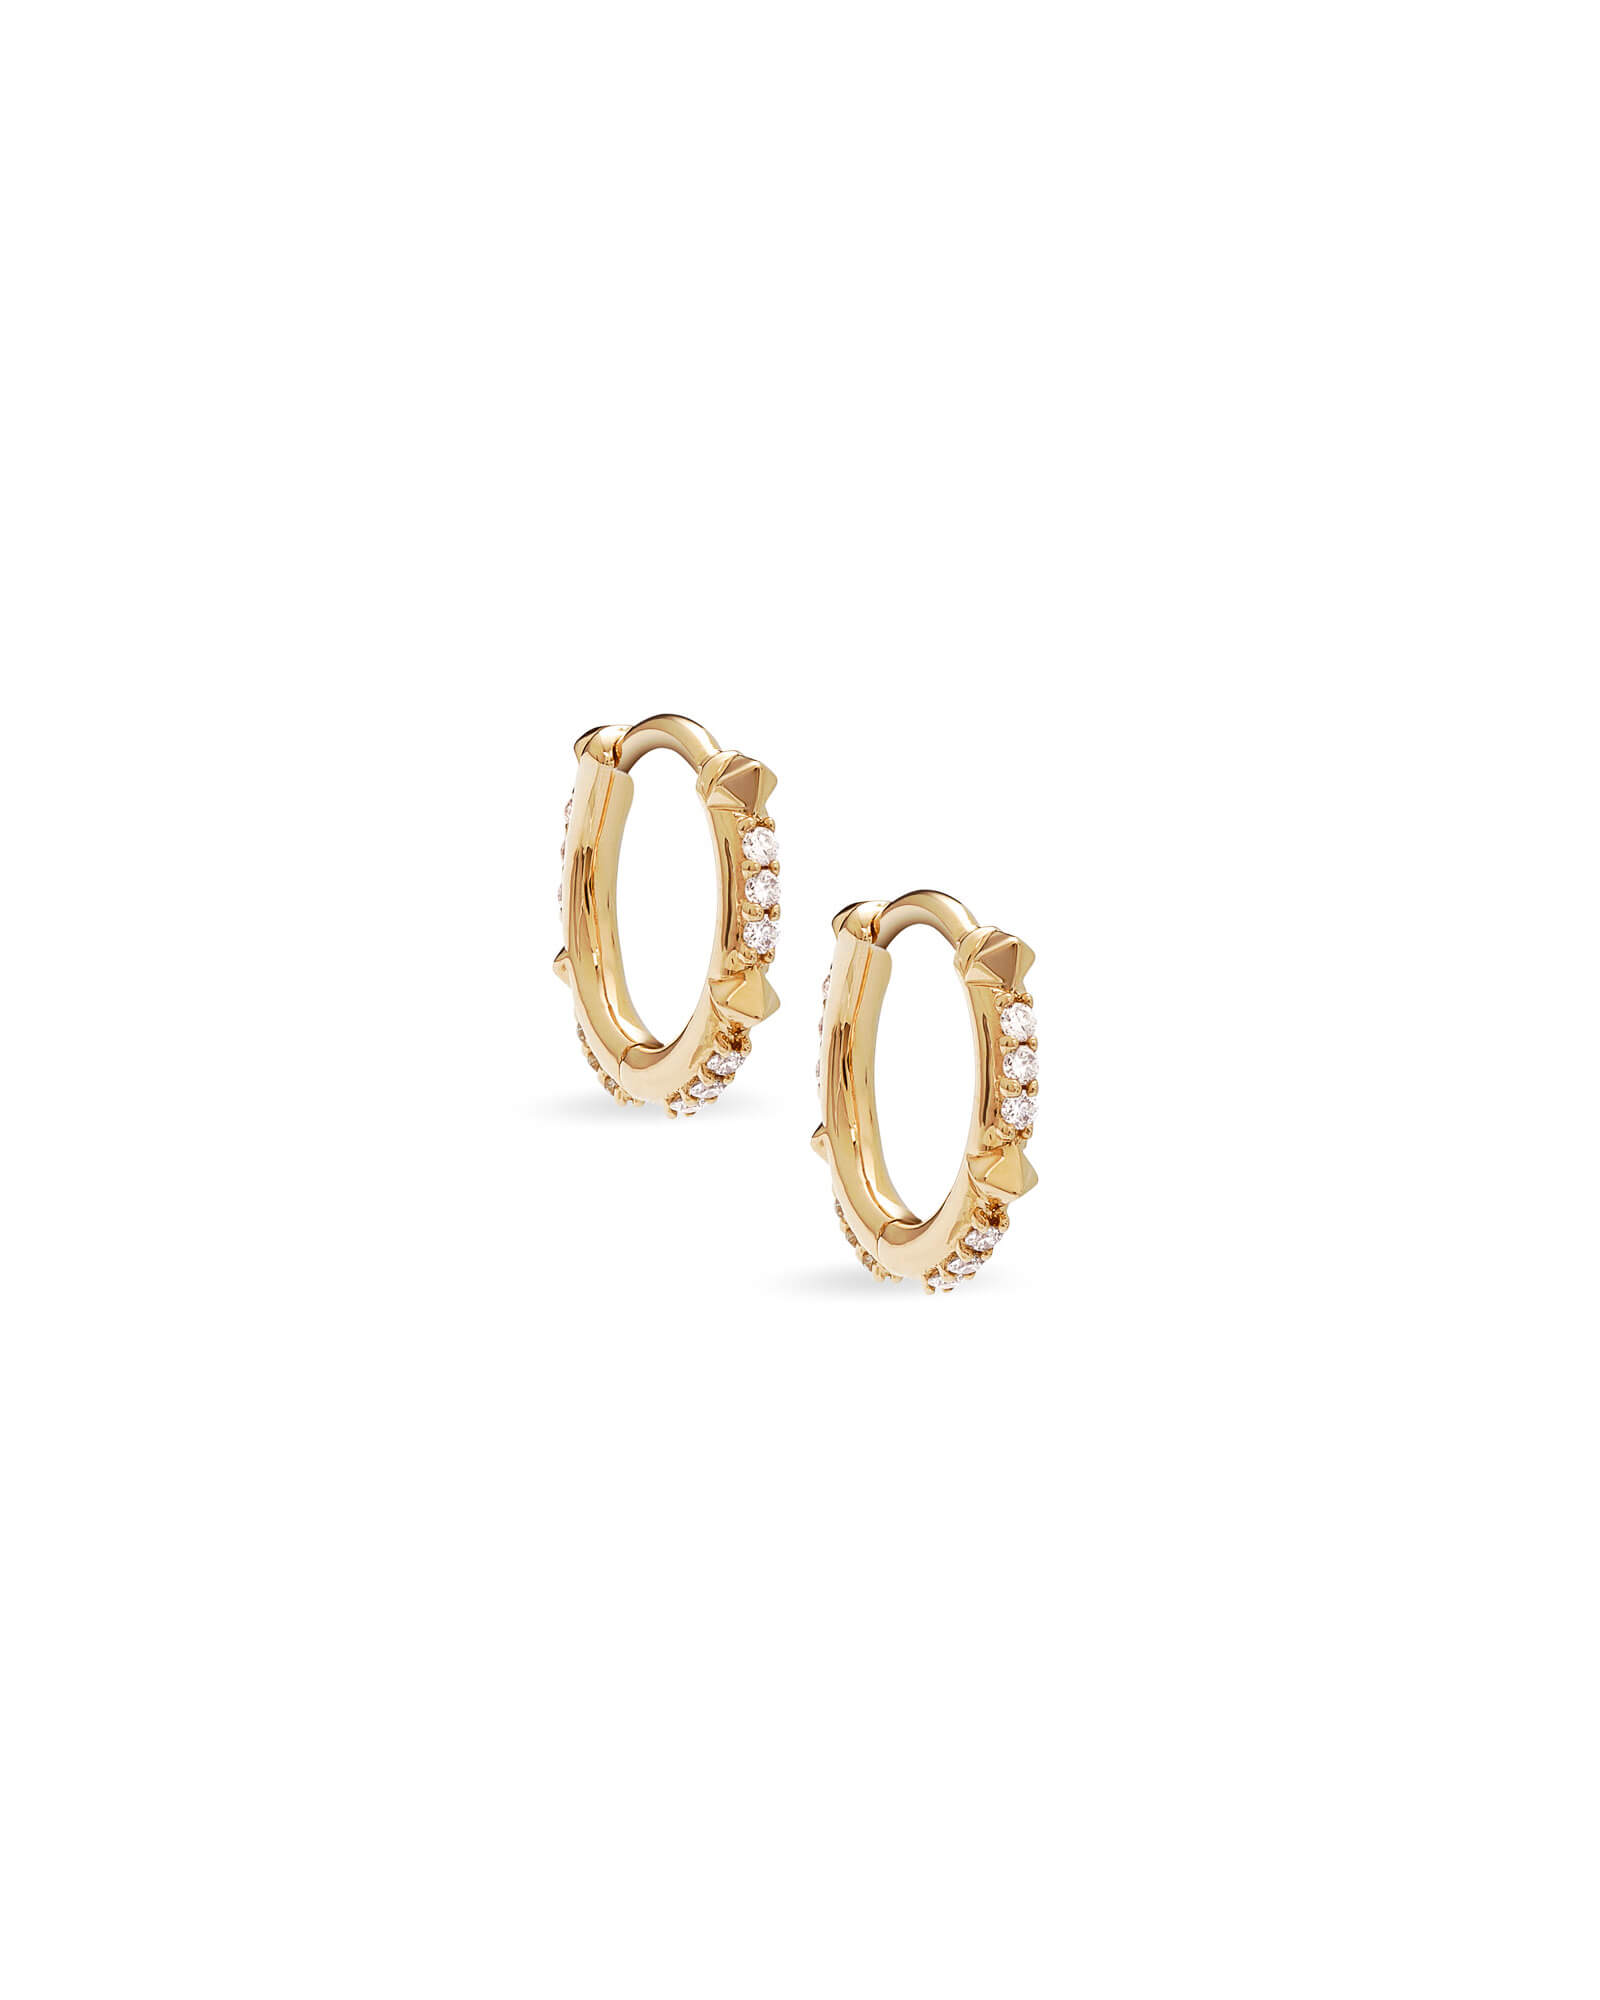 Jett 14k Gold Huggie Earrings in White Diamond